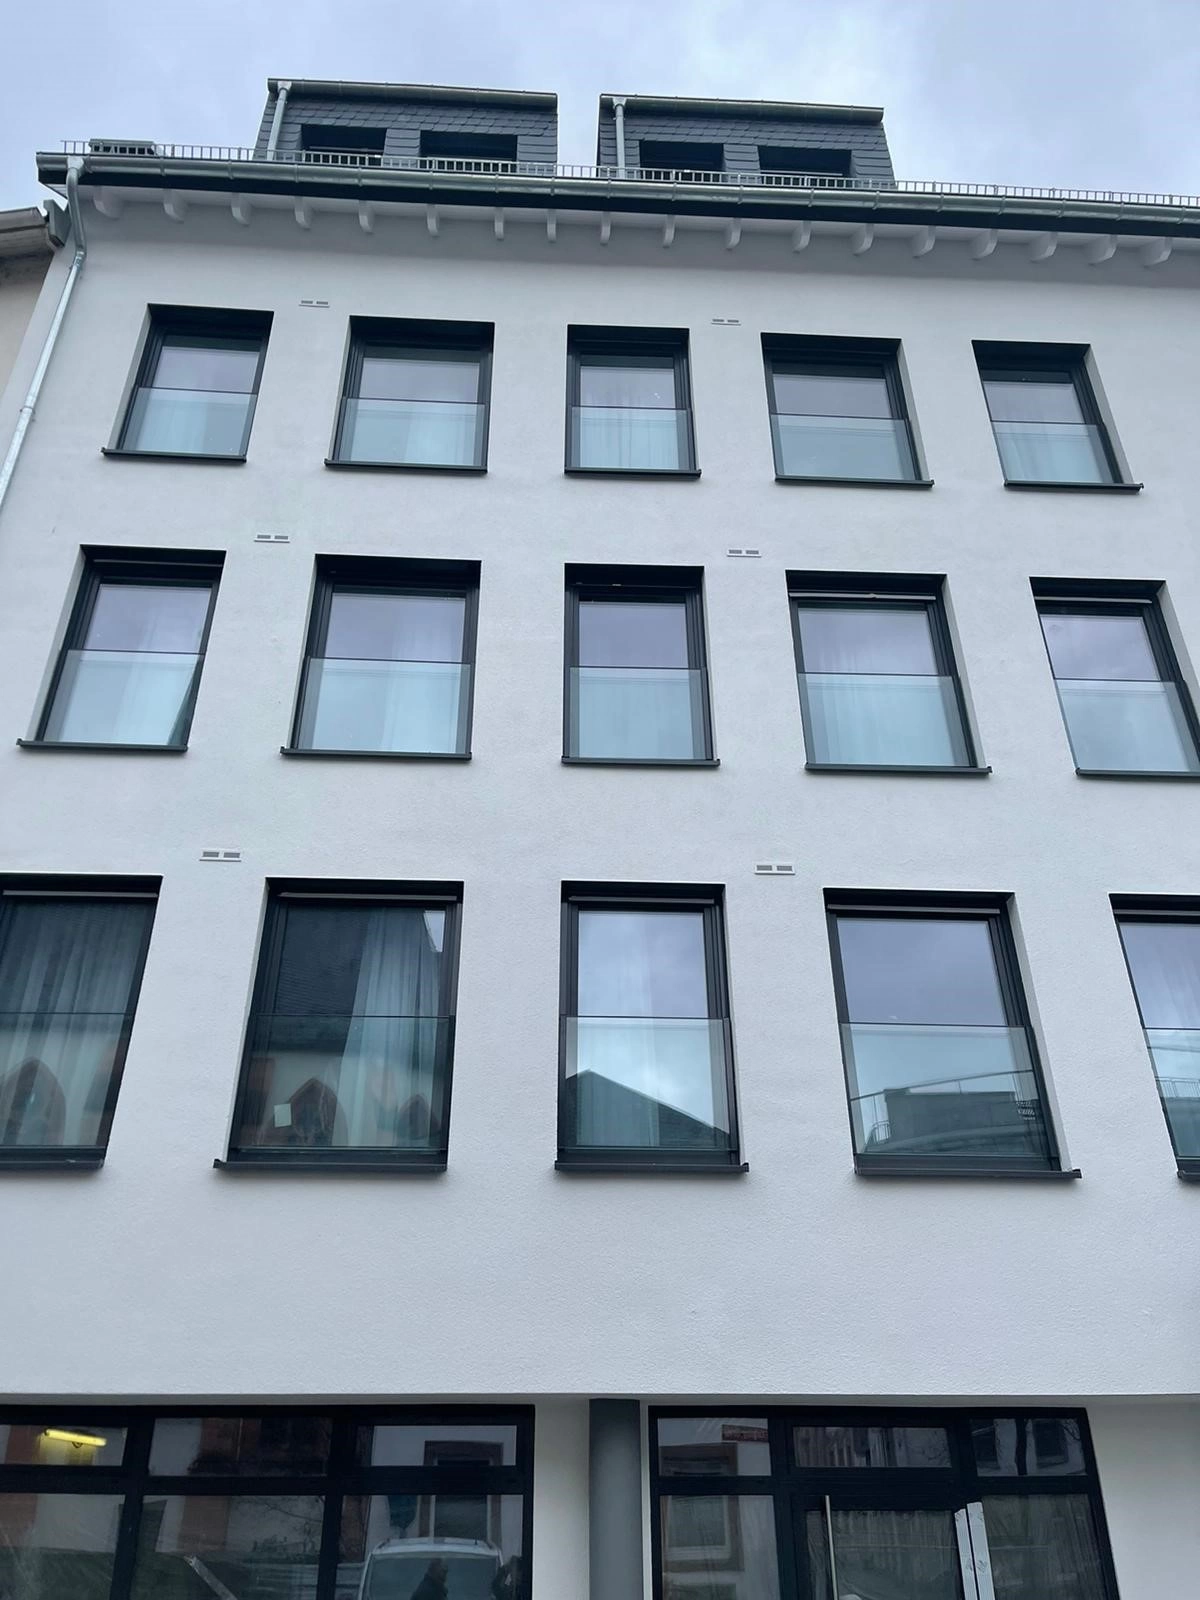 Renderbild des geplanten Aparthotels in der Innenstadt Mainz - Klarastraße